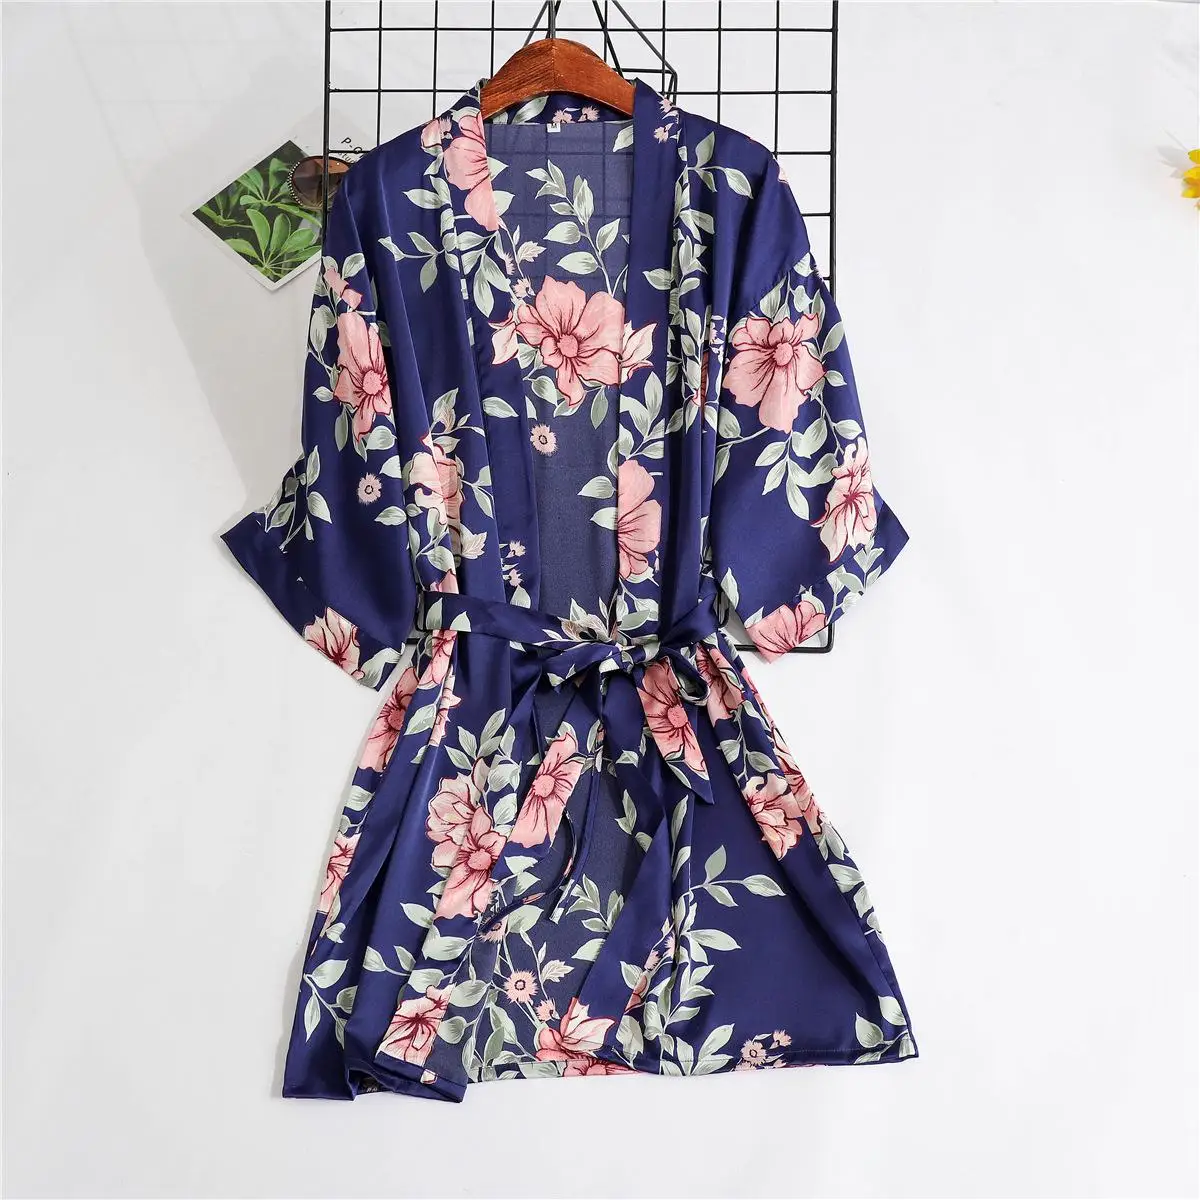 Темно-синий женский топ из 2 предметов на бретелях Пижама комплекты одежды для сна Женская домашняя одежда спальный костюм соблазнительное кимоно халат пижамы m-xxl - Цвет: F - 2